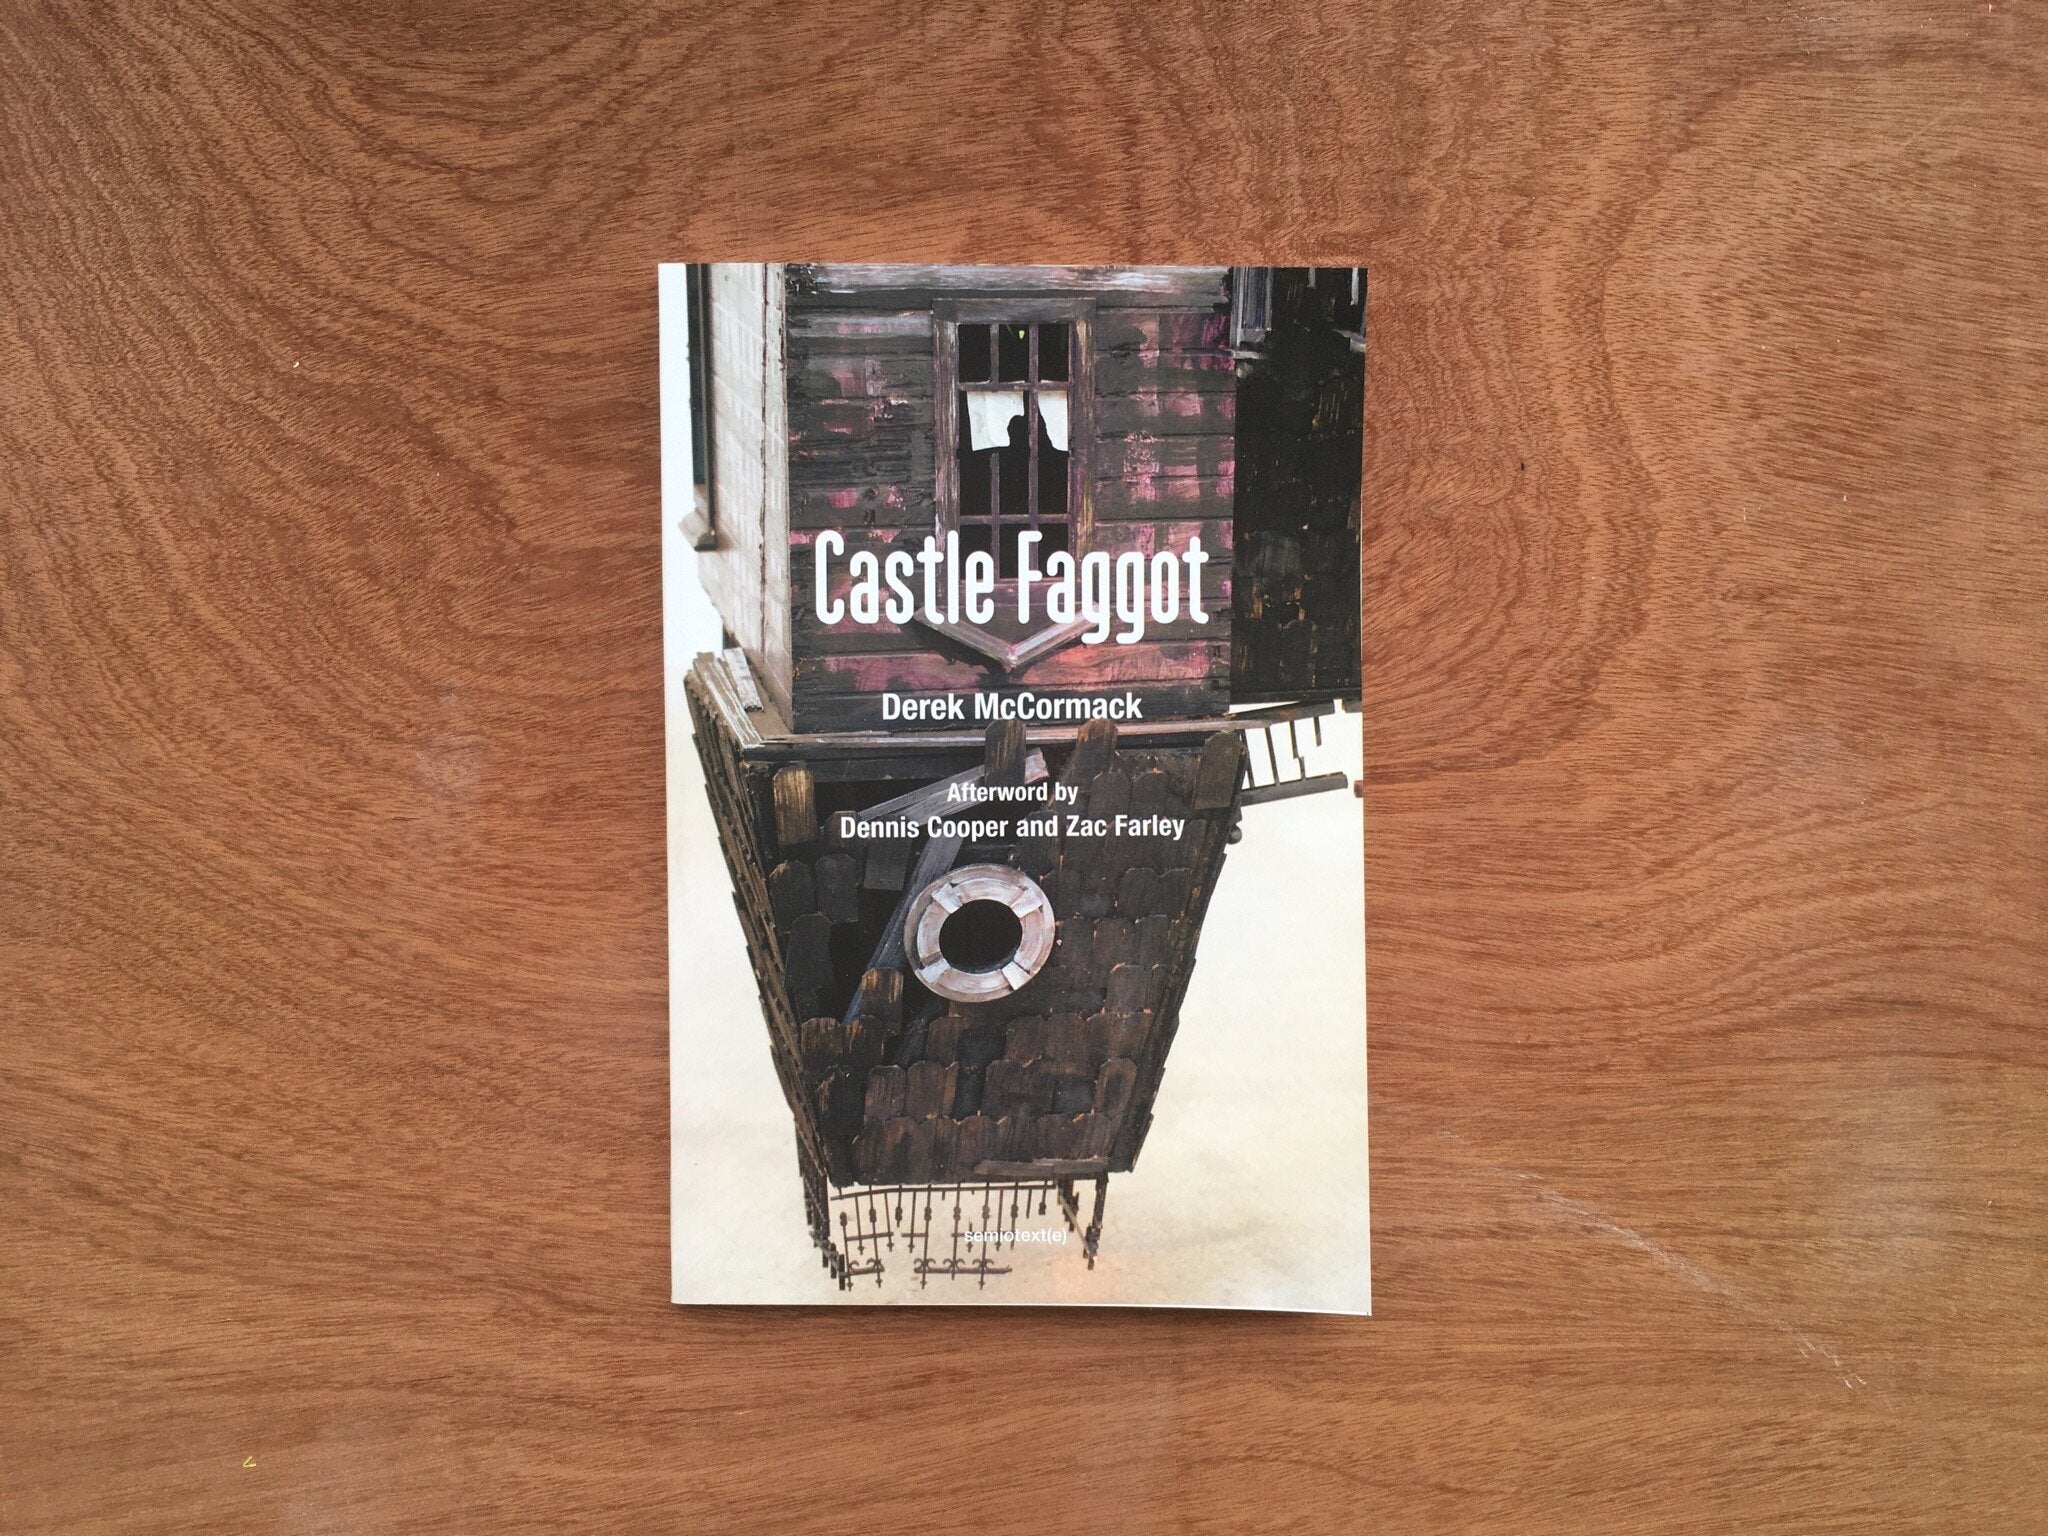 CASTLE FAGGOT by Derek McCormack